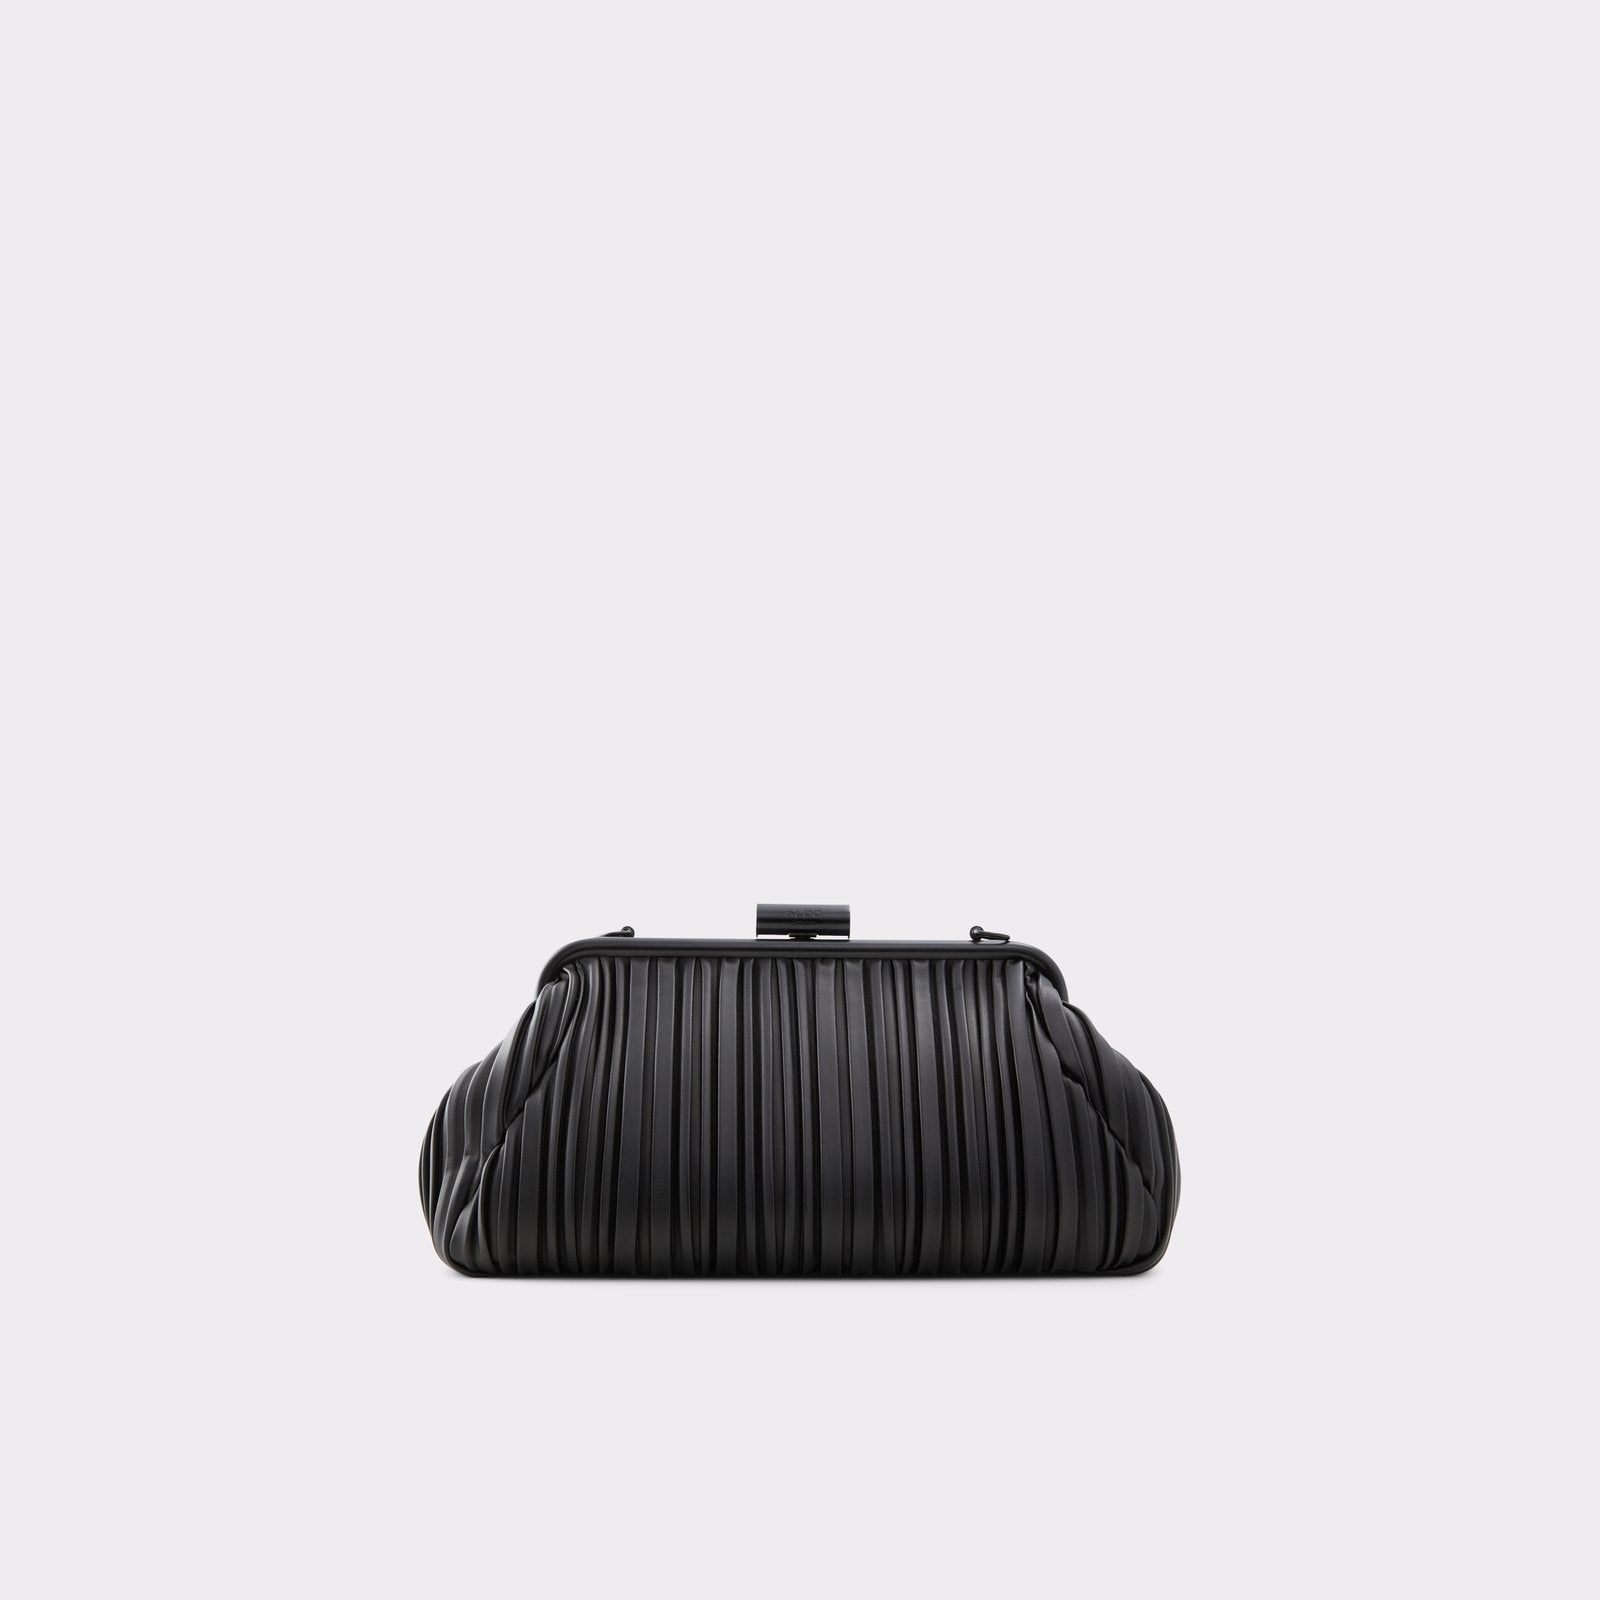 Boullanger Bag - Black - ALDO KSA